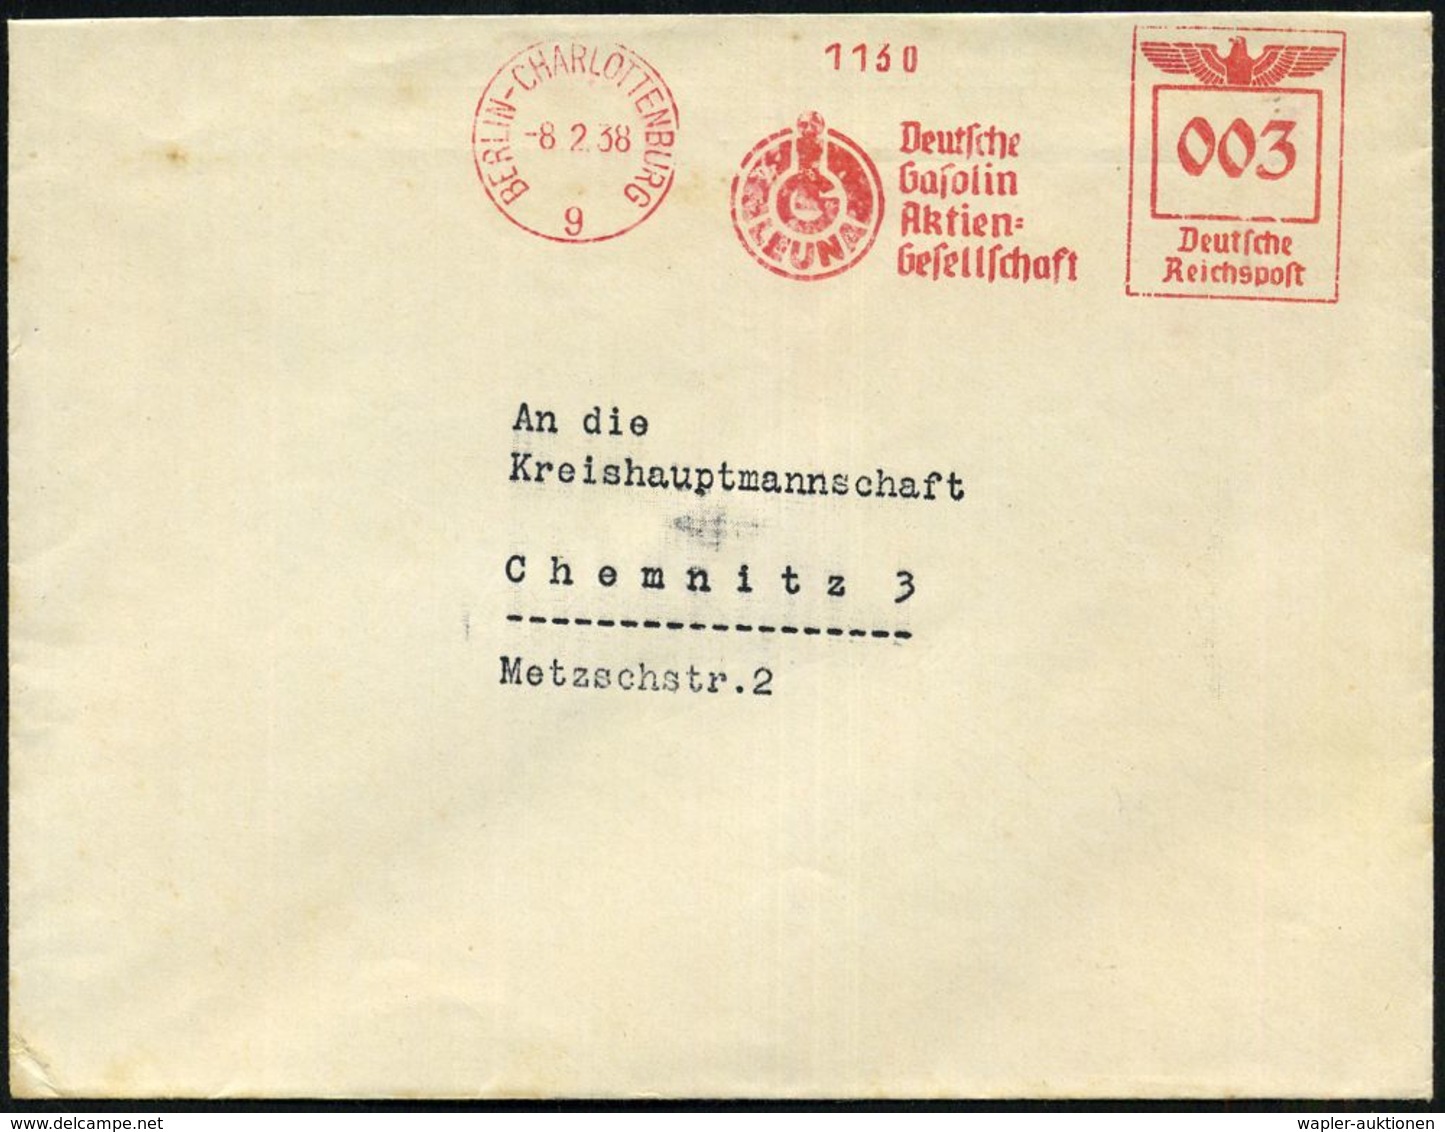 BERLIN-CHARLOTTENBURG/ 9/ IG/ LEUNA/ Deutsche/ Gasolin/ AG 1938 (8.2.) AFS = I.G.-Logo "LEUNA" , Rs. Abs.-Vordr.: DEUTSC - Chemie